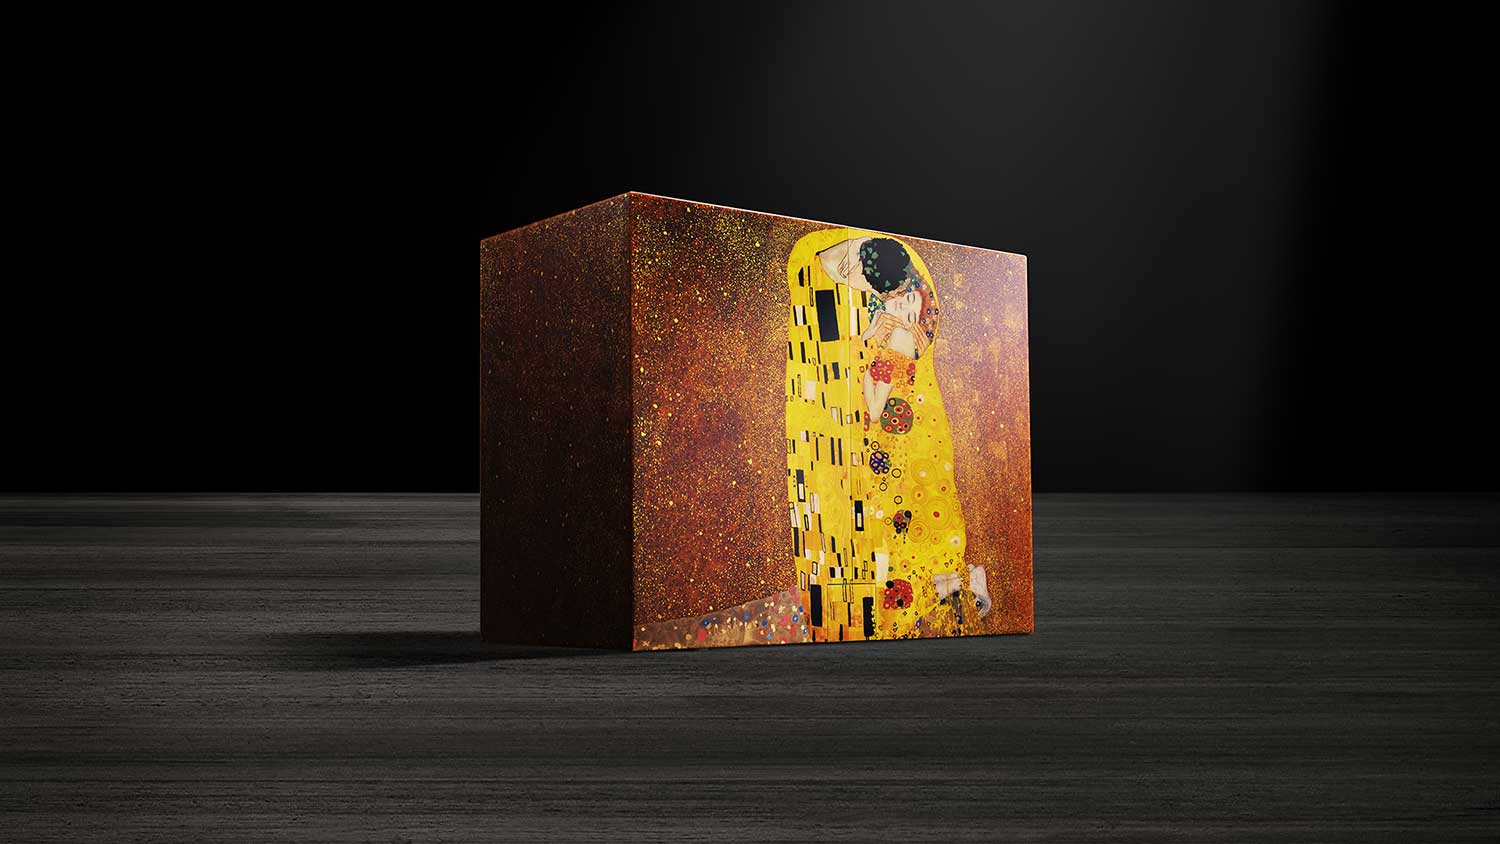 Jaeger-LeCoultre Heritage Atmos "El Beso" de Klimt (2013)